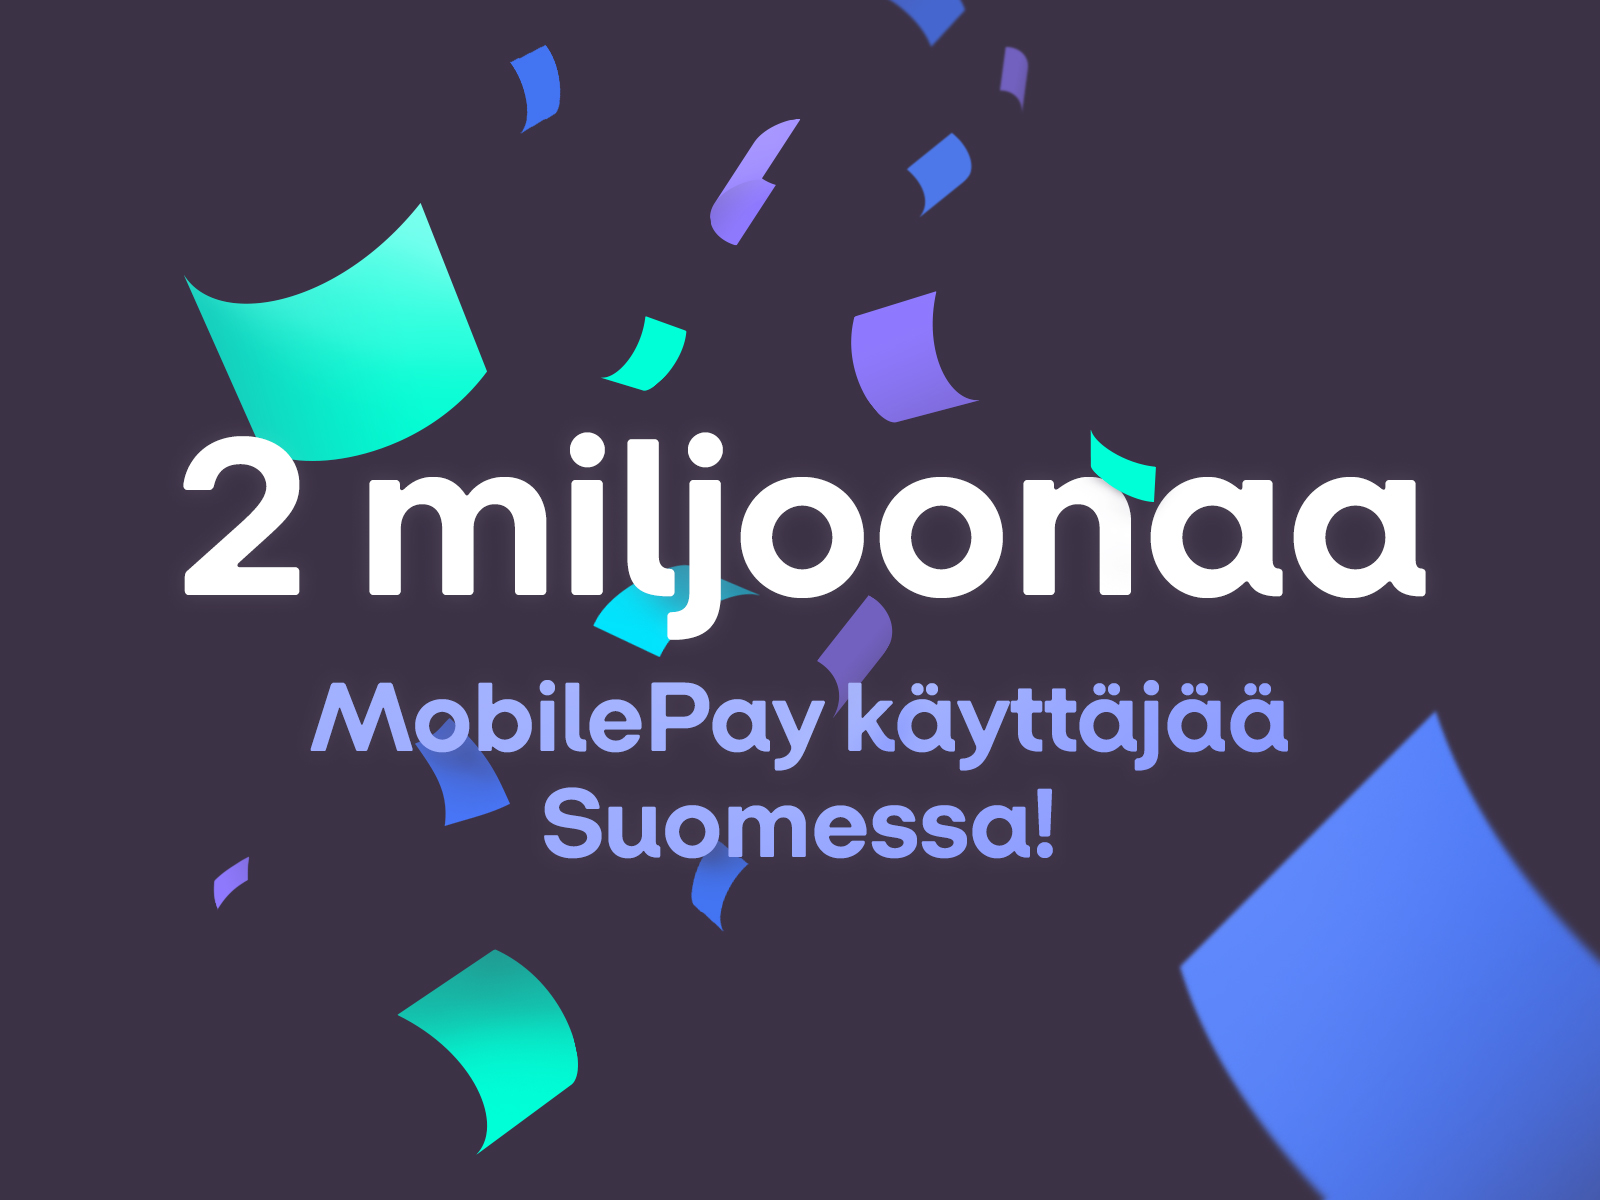 2 miljoonaa MobilePay käyttäjää Suomessa